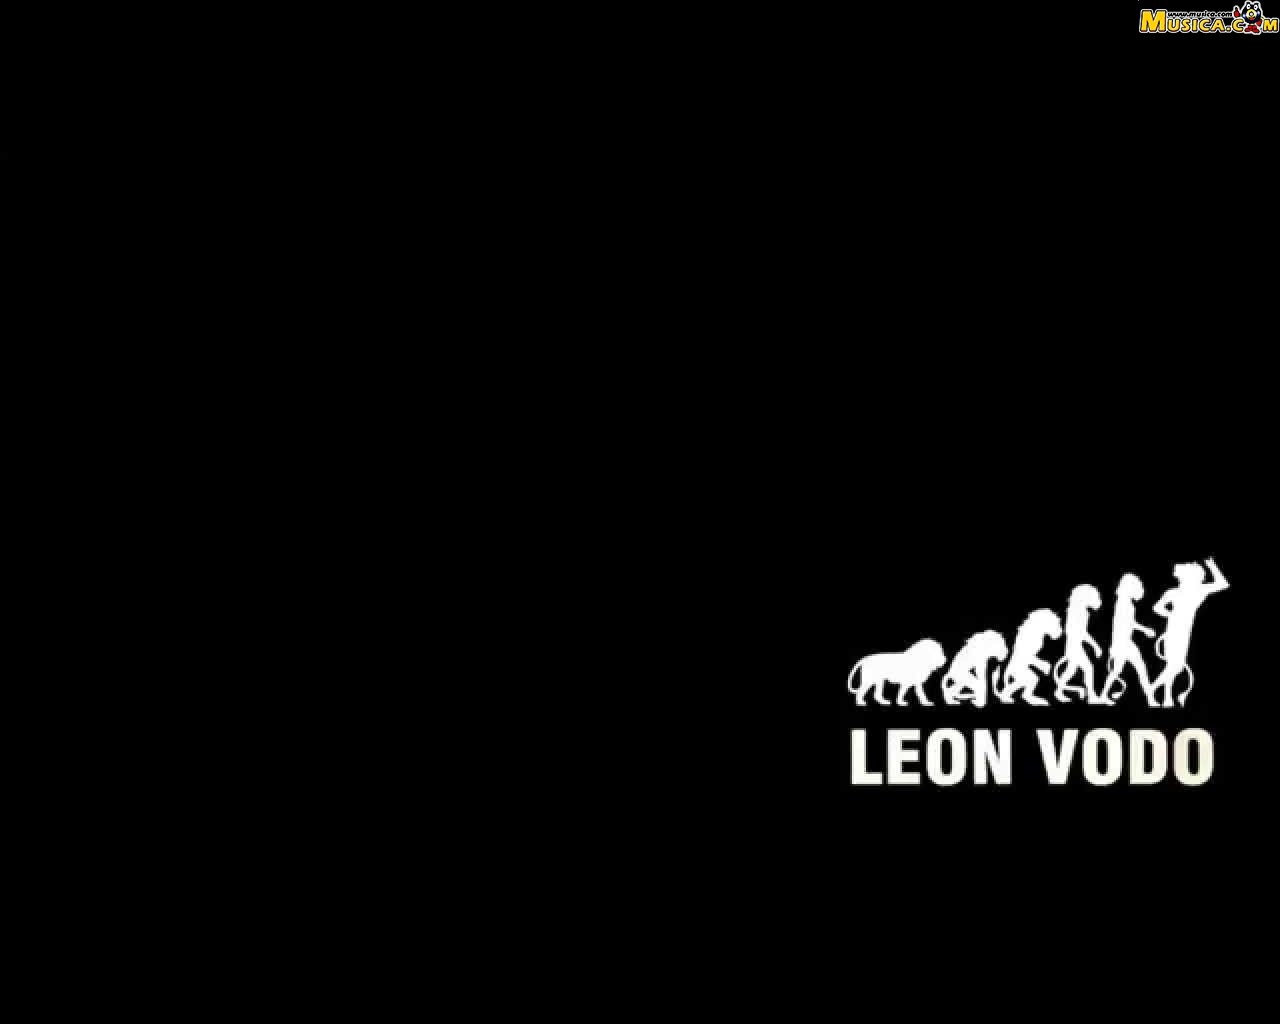 Fondo de pantalla de León Vodo